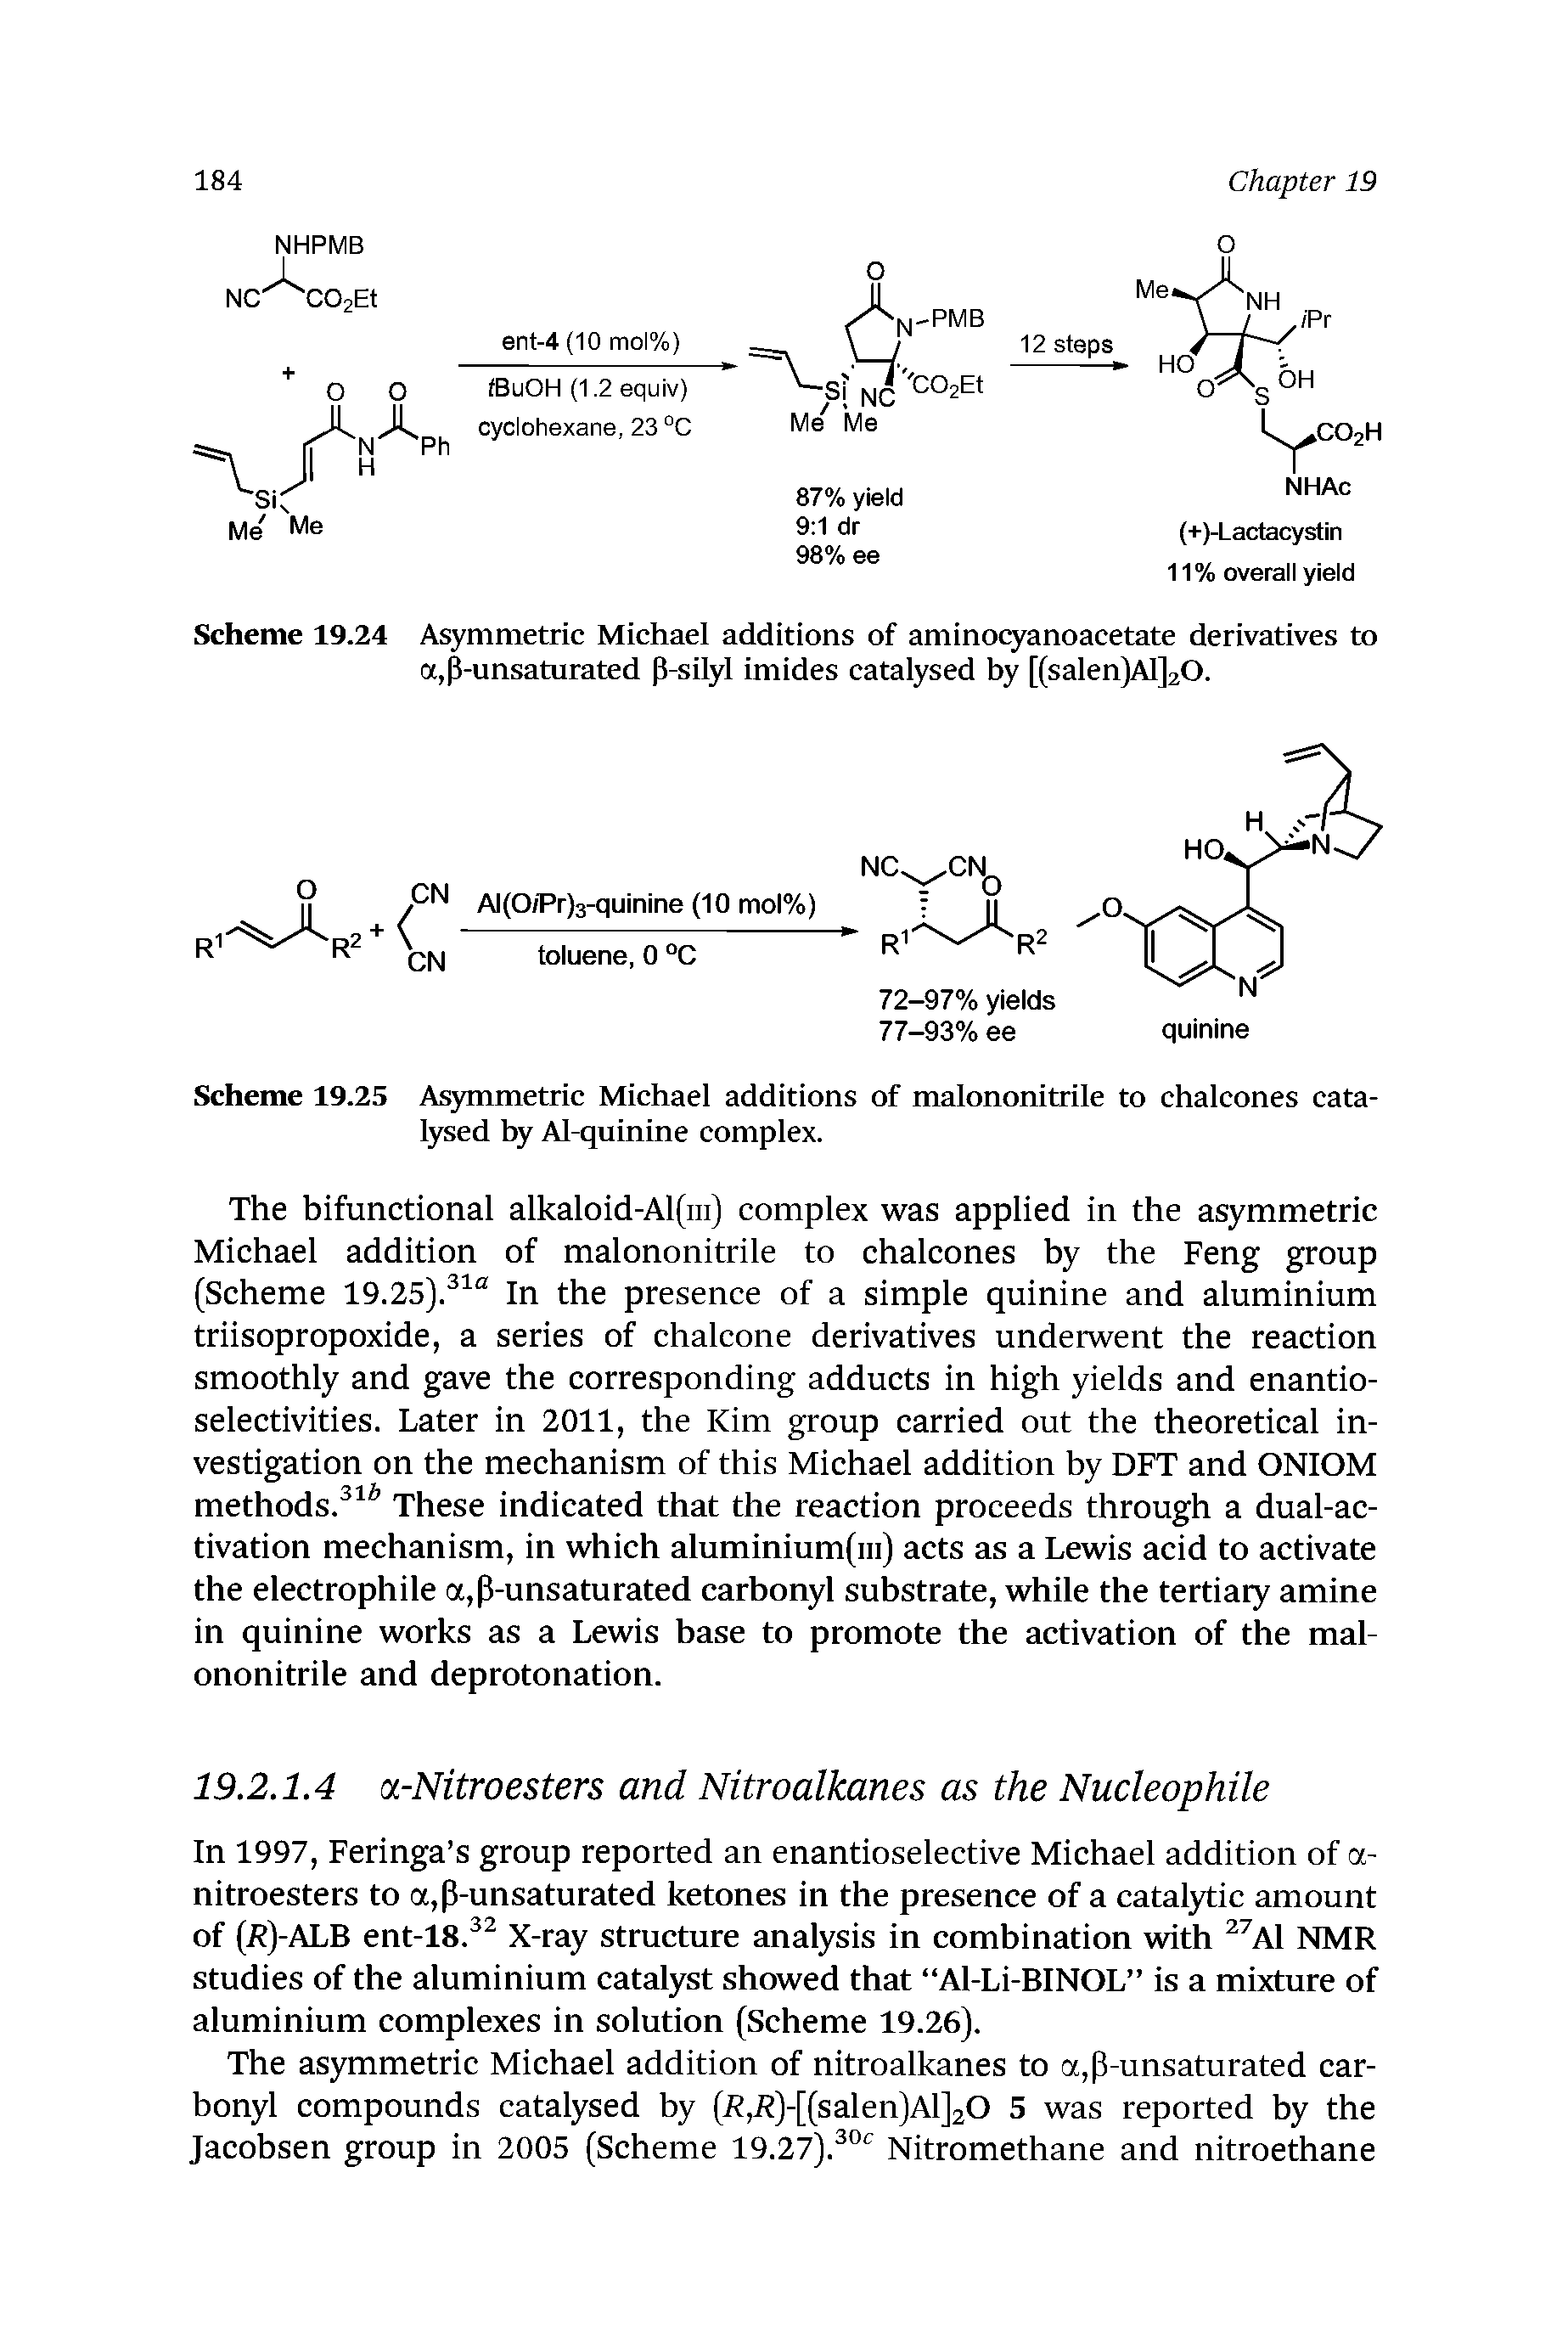 Scheme 19.25 Asymmetric Michael additions of malononitrile to chalcones catalysed by Al-quinine complex.